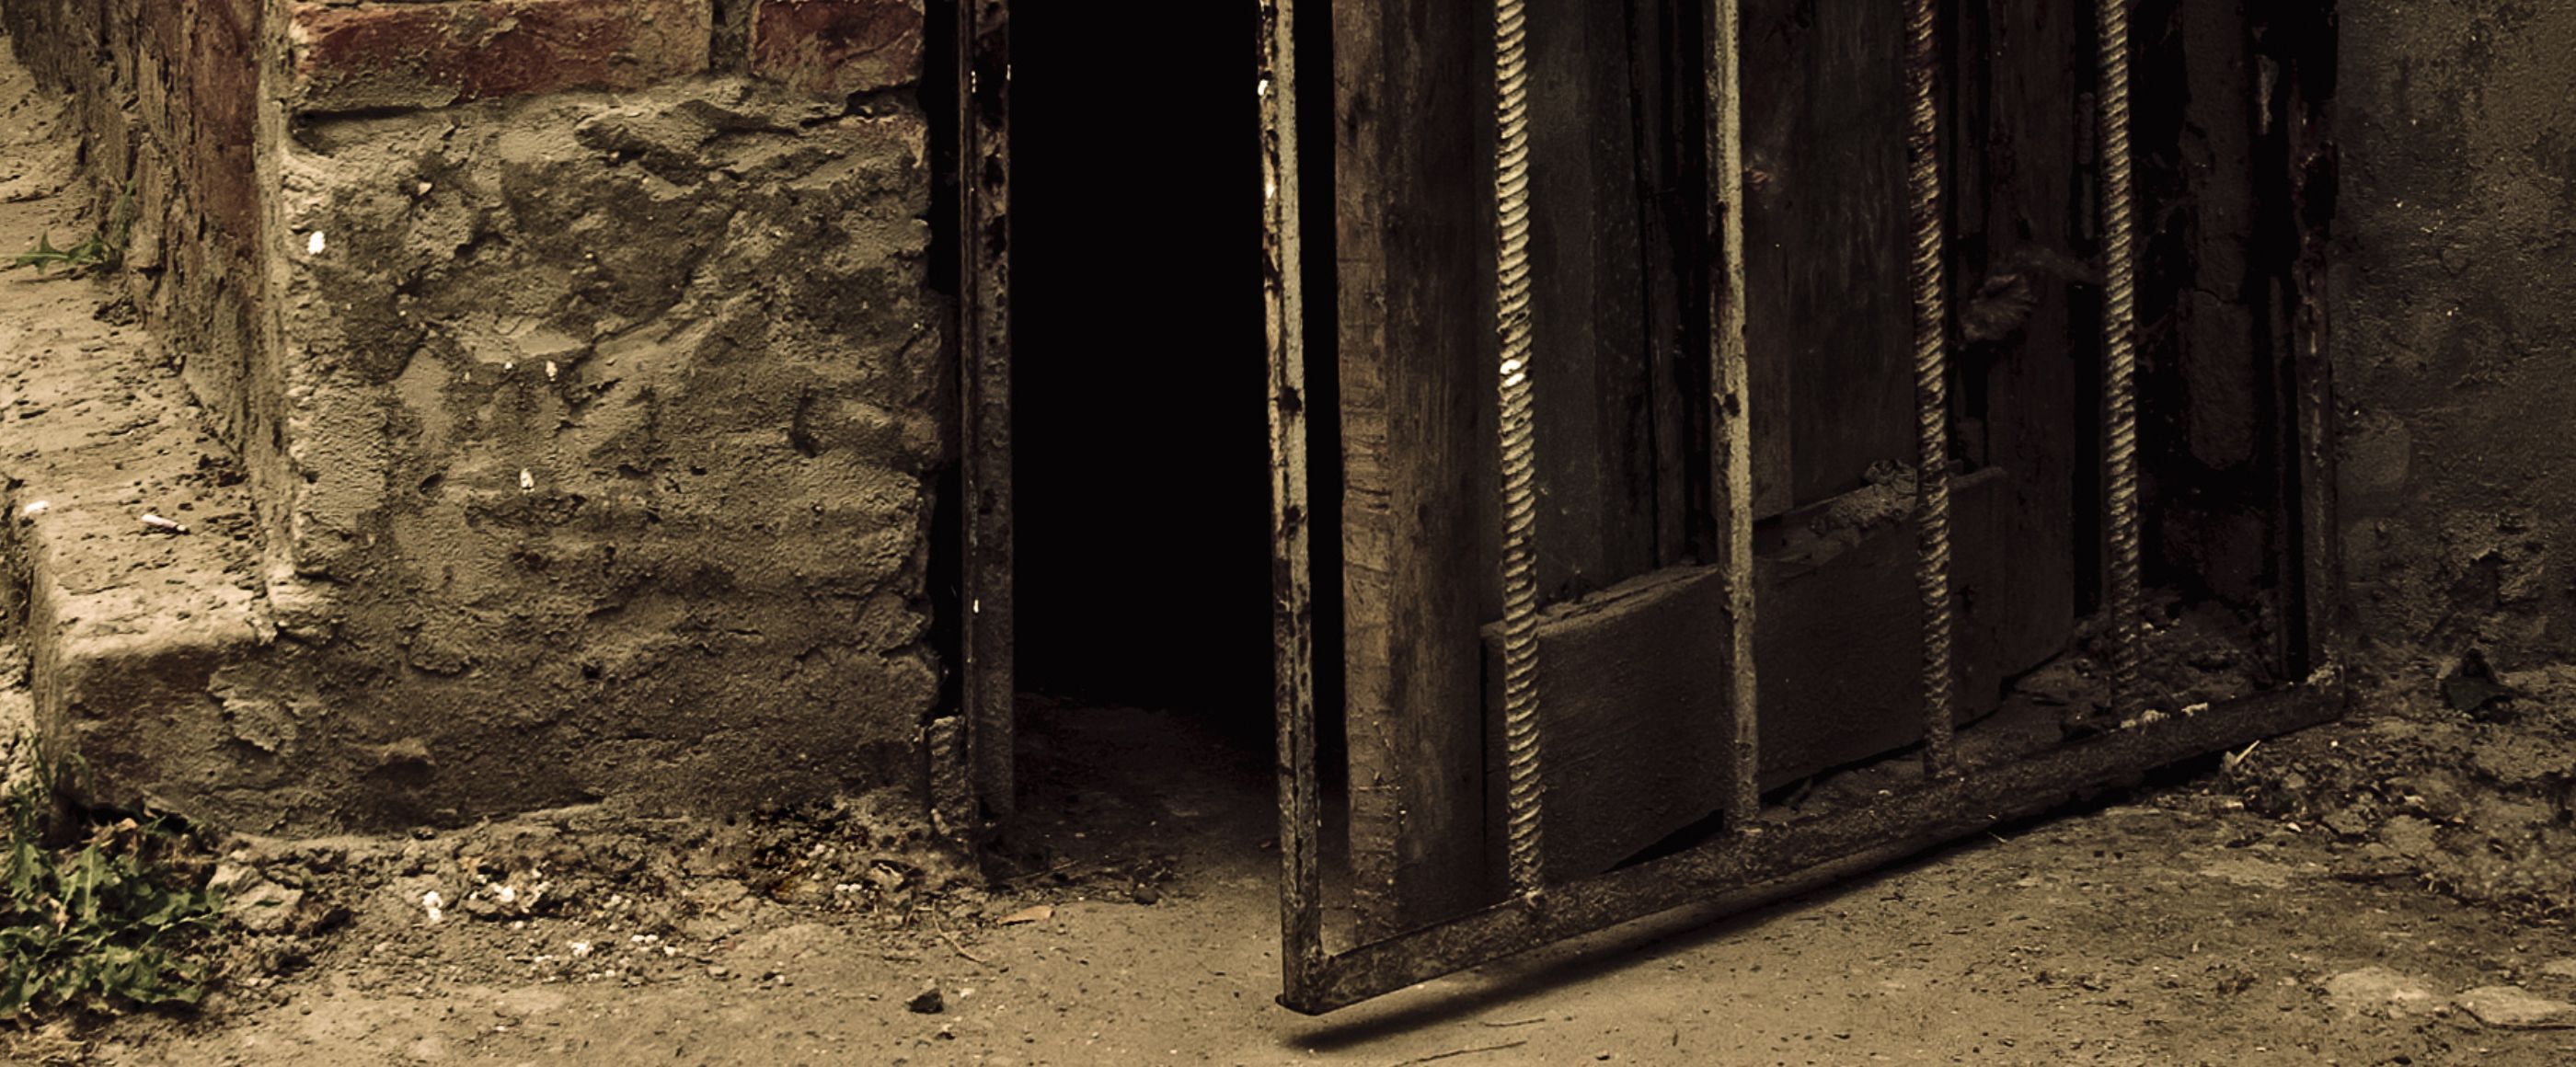 Eine leicht geöffnete Holztür in einer Steinmauer führt in einen dunklen Gang